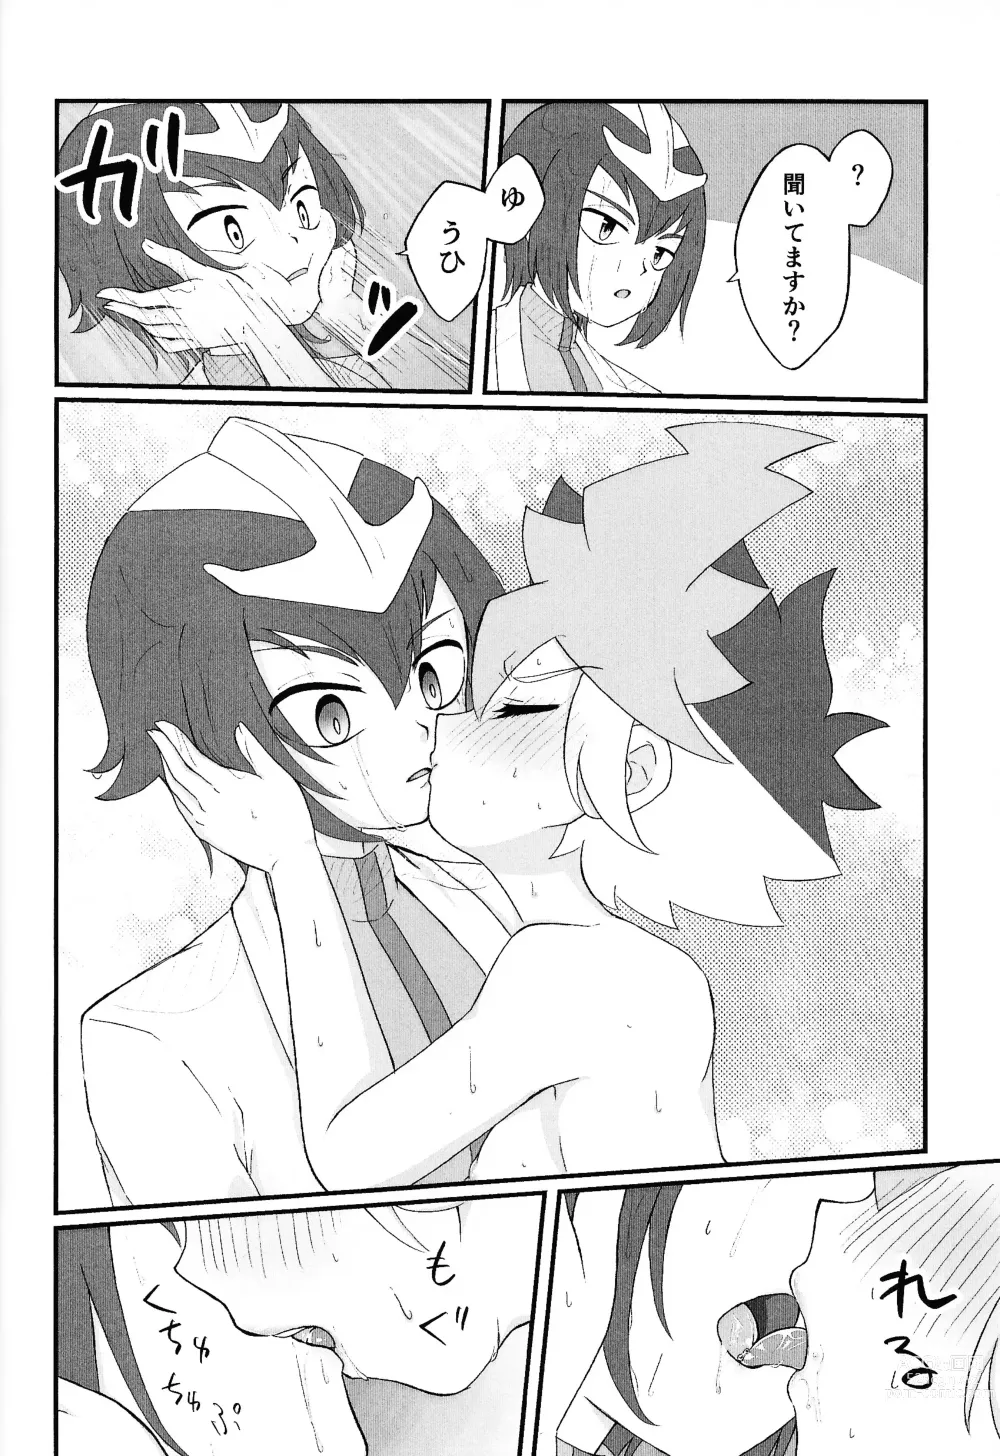 Page 29 of doujinshi Pandoranohako ka kindan no kajitsu ka